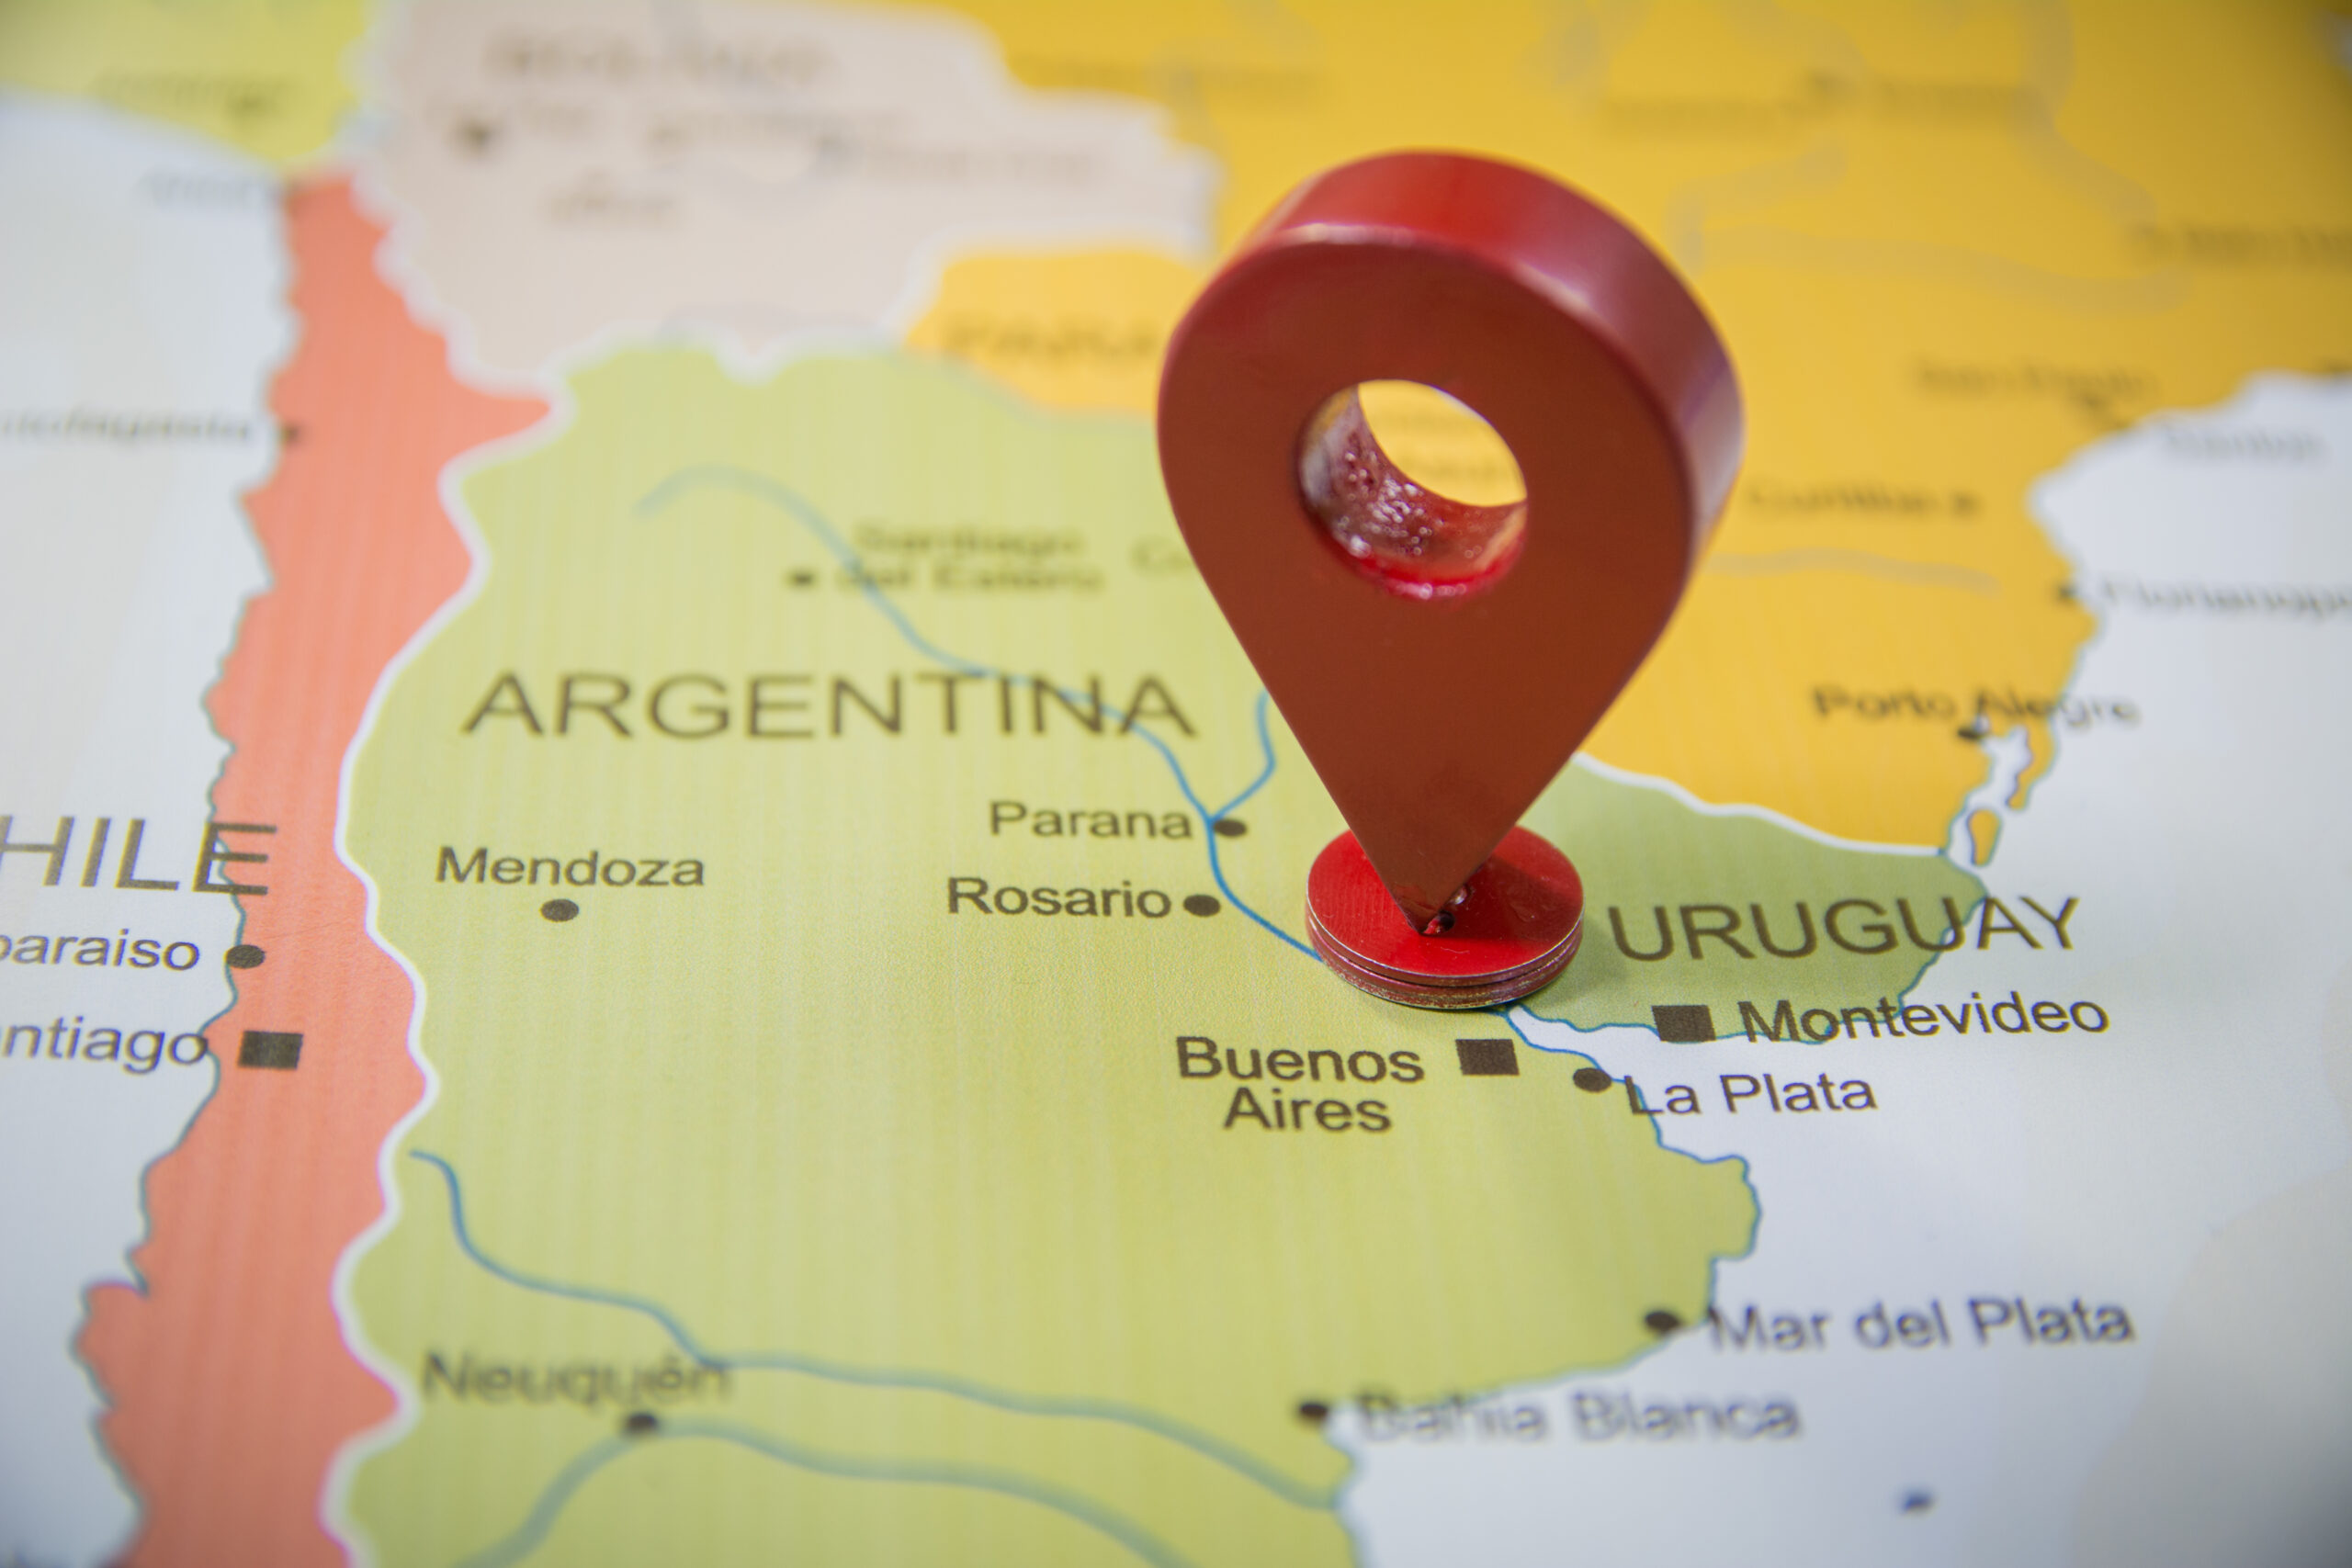 Karte von Argentinien und Uruguay mit Stecknadel auf Buenos Aires